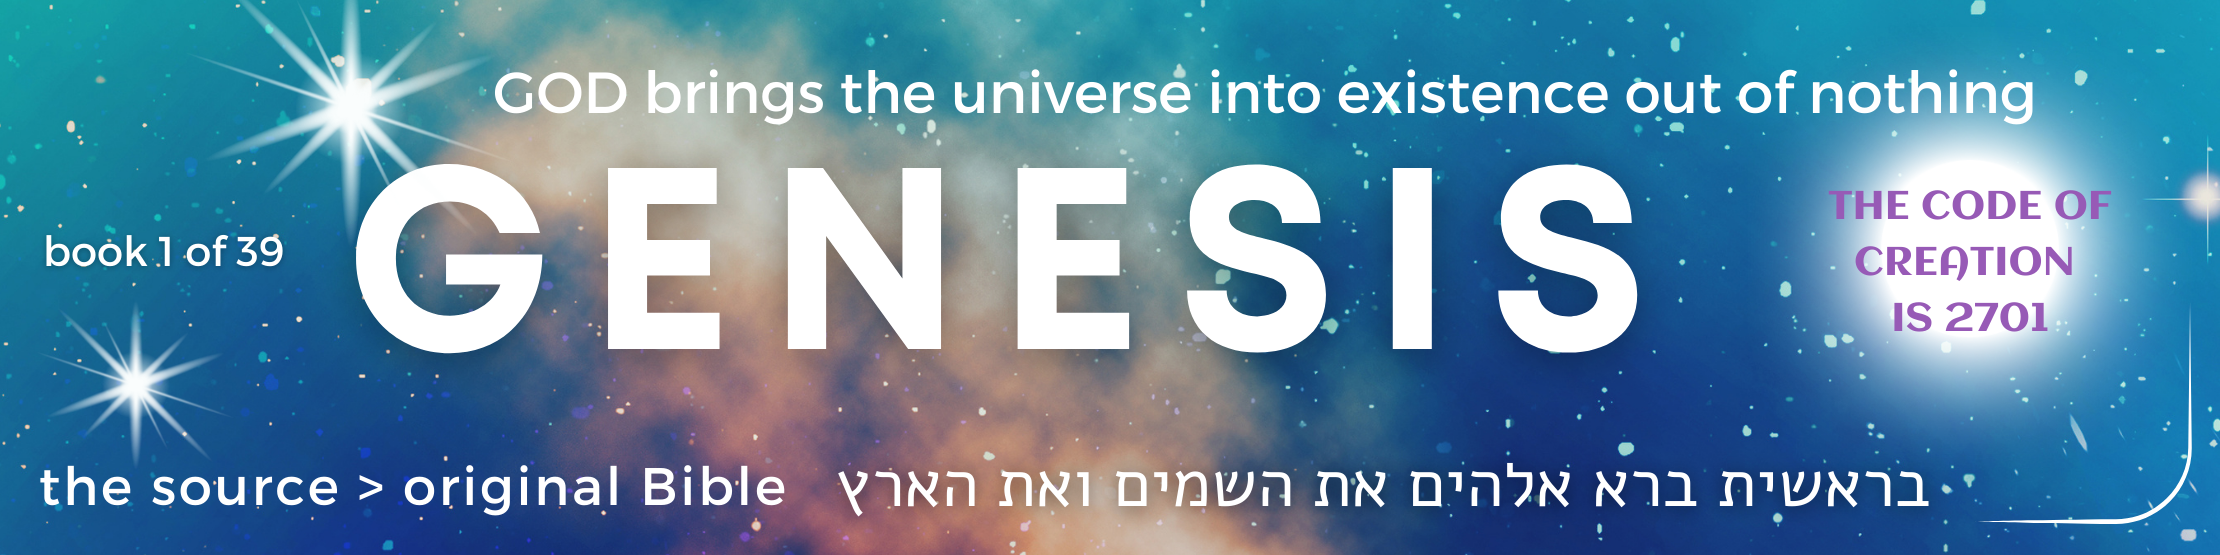 1 Genesis book - original bible - banner